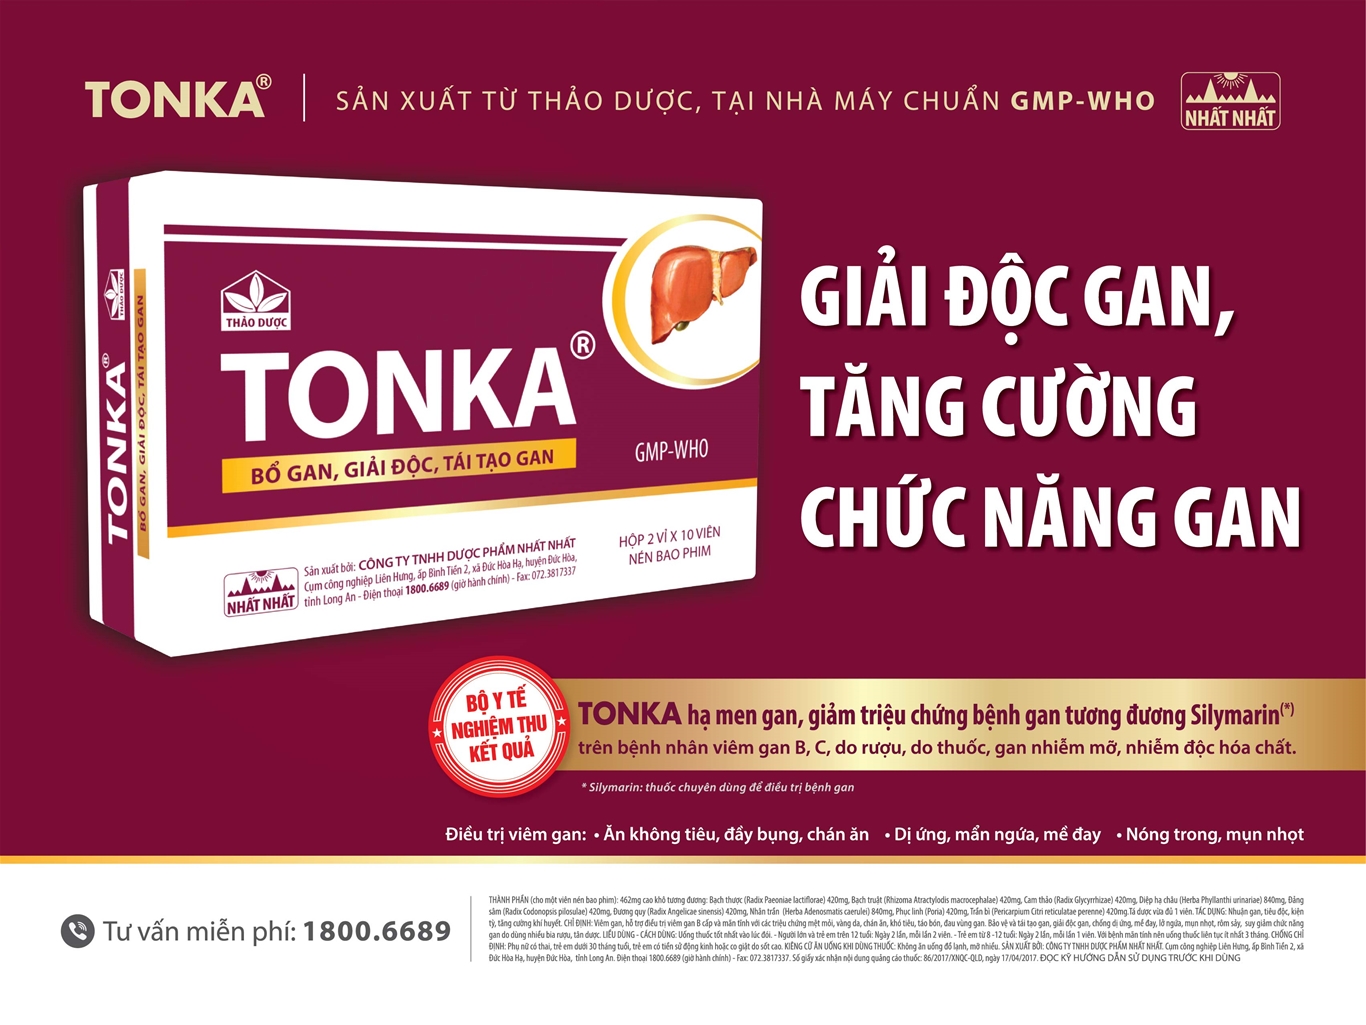 Tonka - Sản phẩm bổ gan